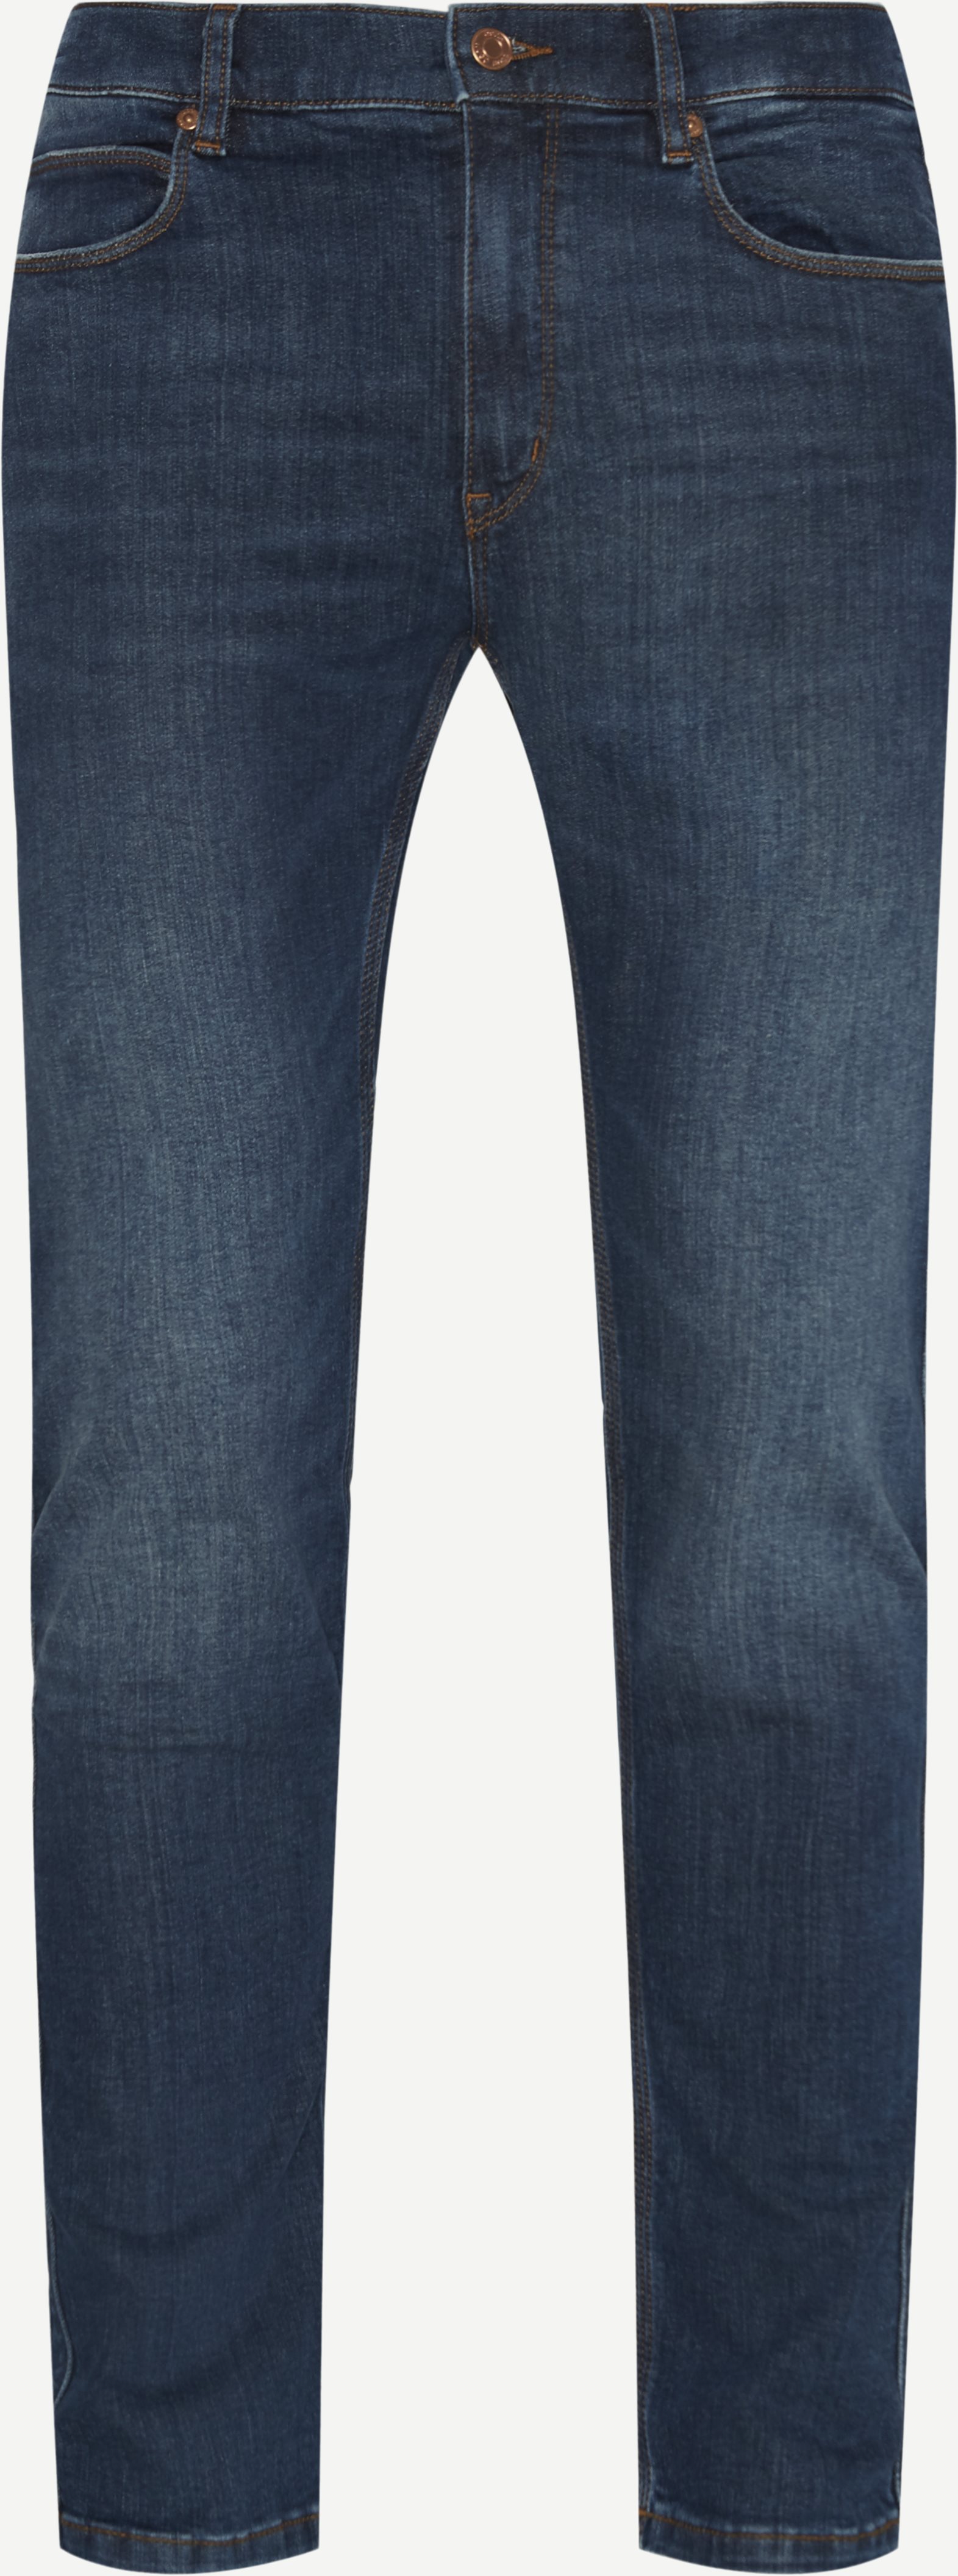 Hugo 734 Jeans - Jeans - Skinny fit - Denim